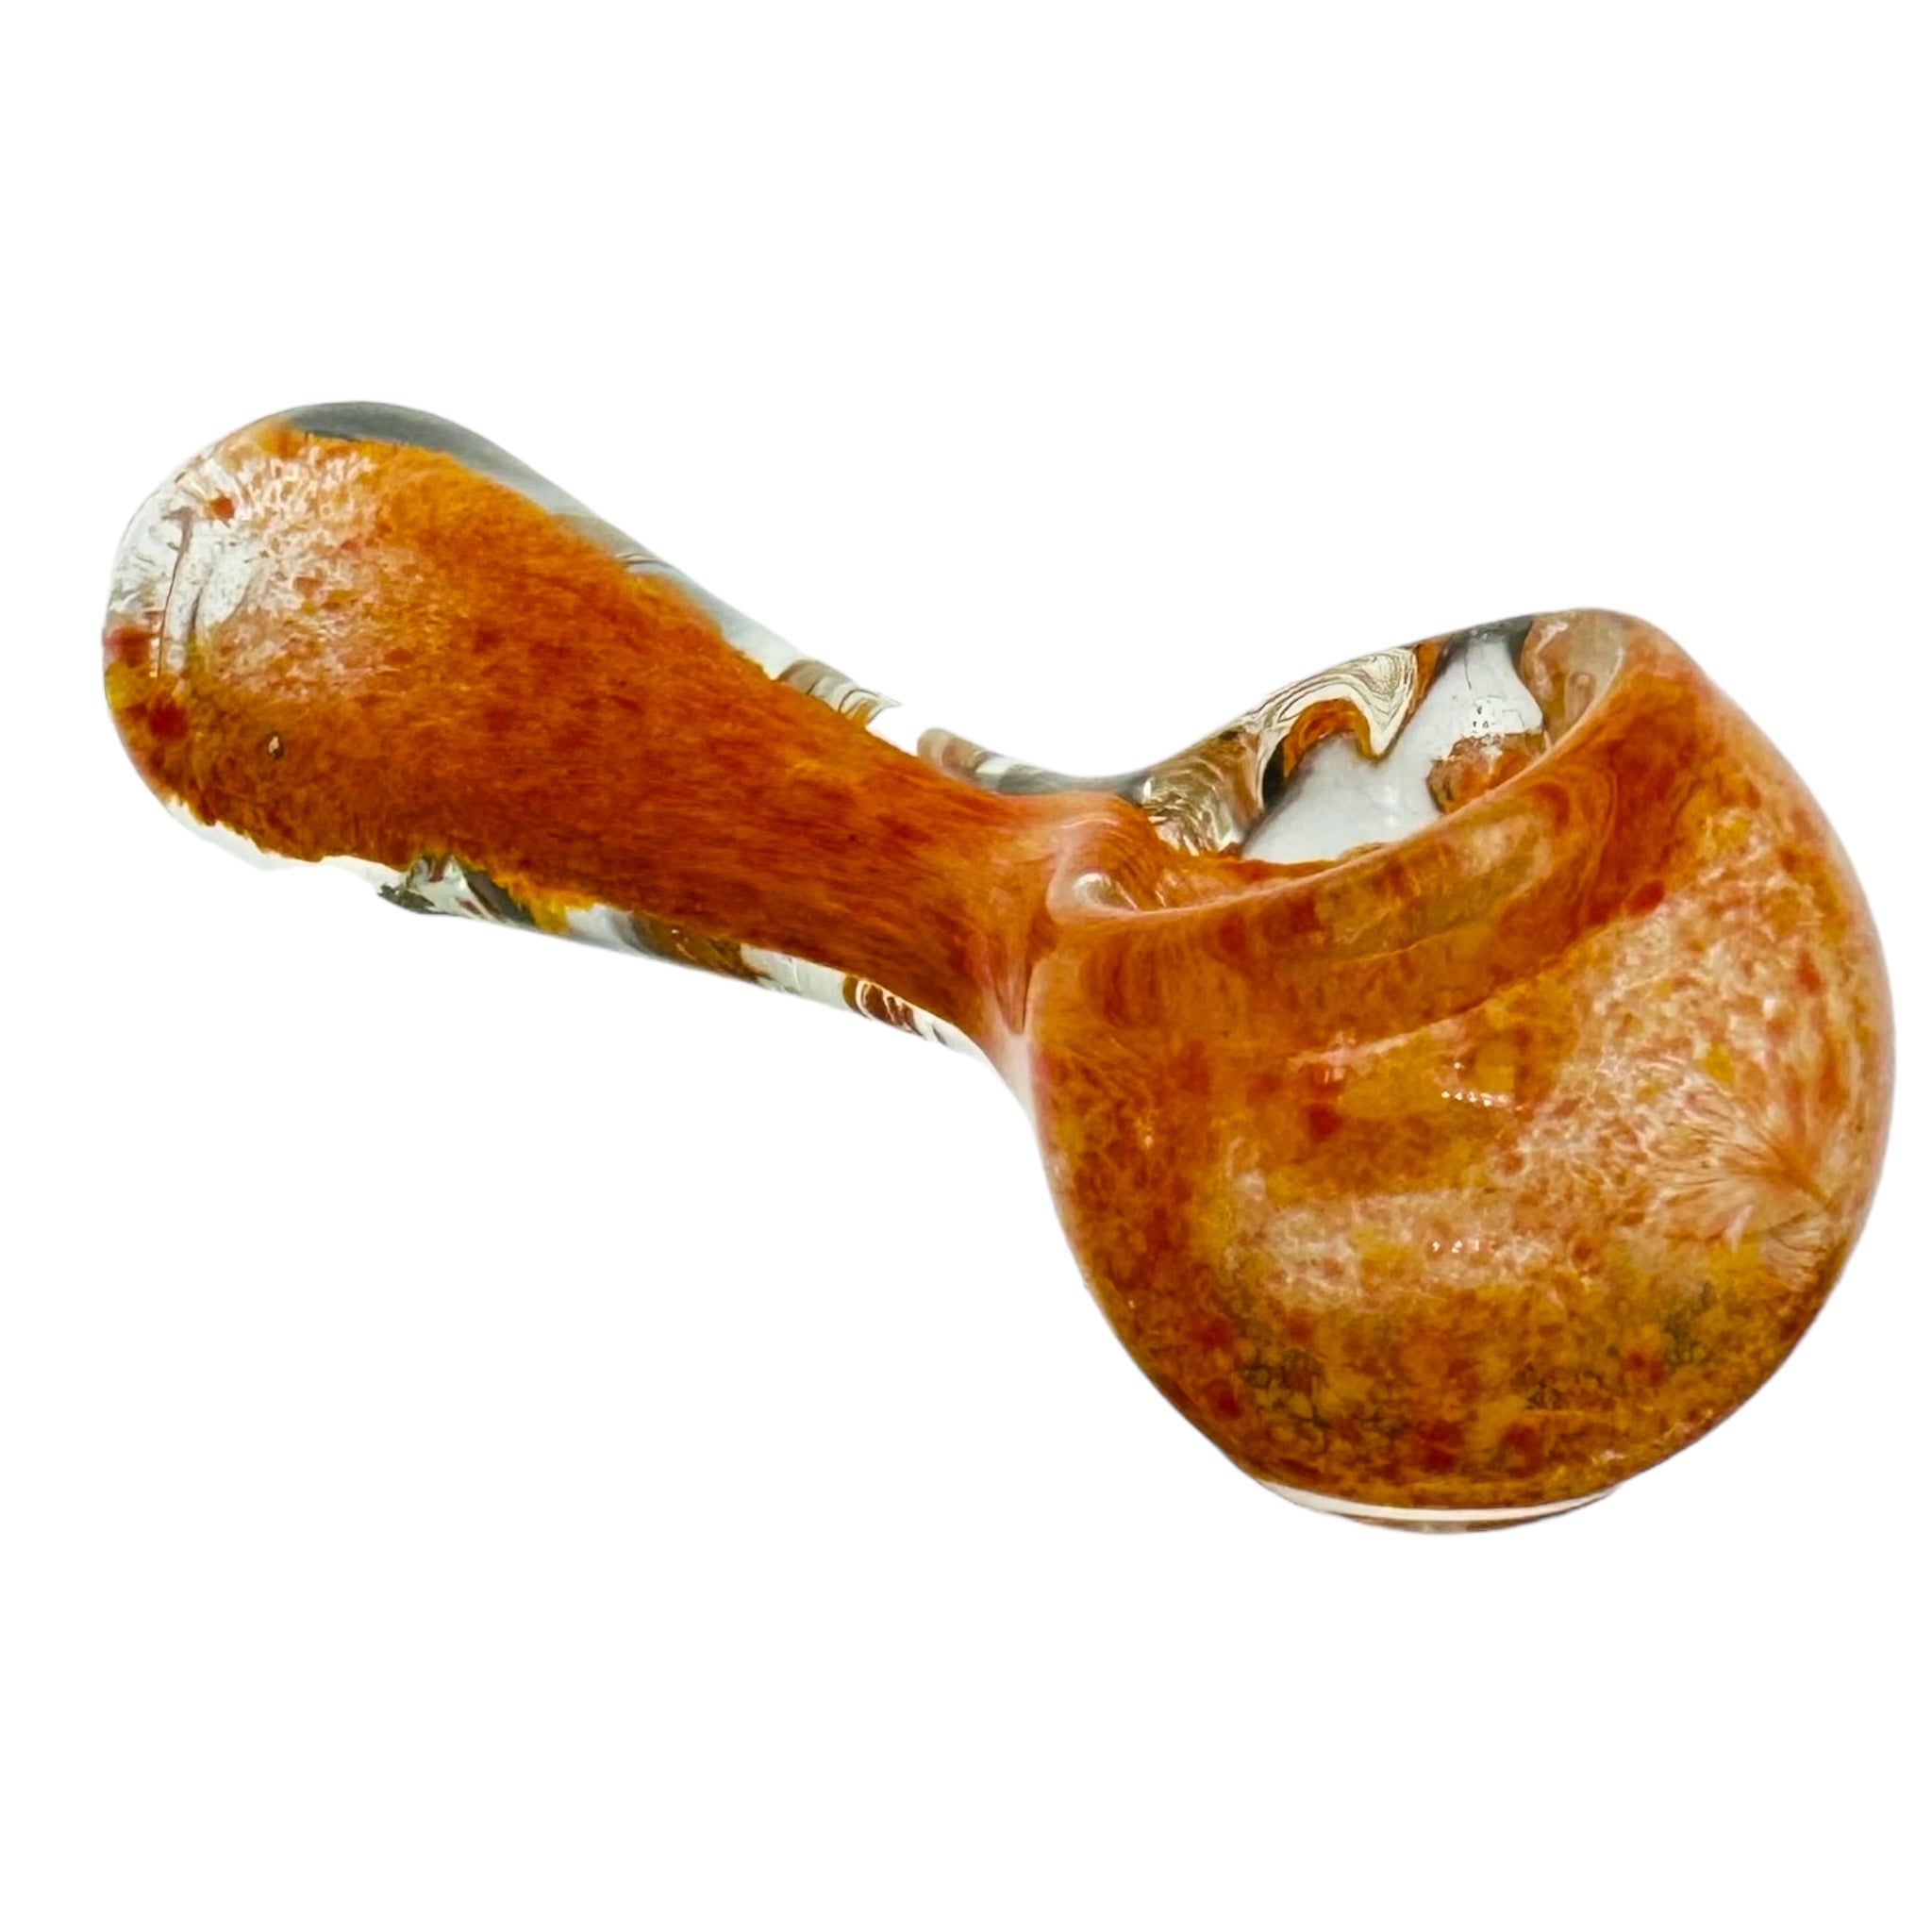 cheap glass hand pipe for cannabis cute orange